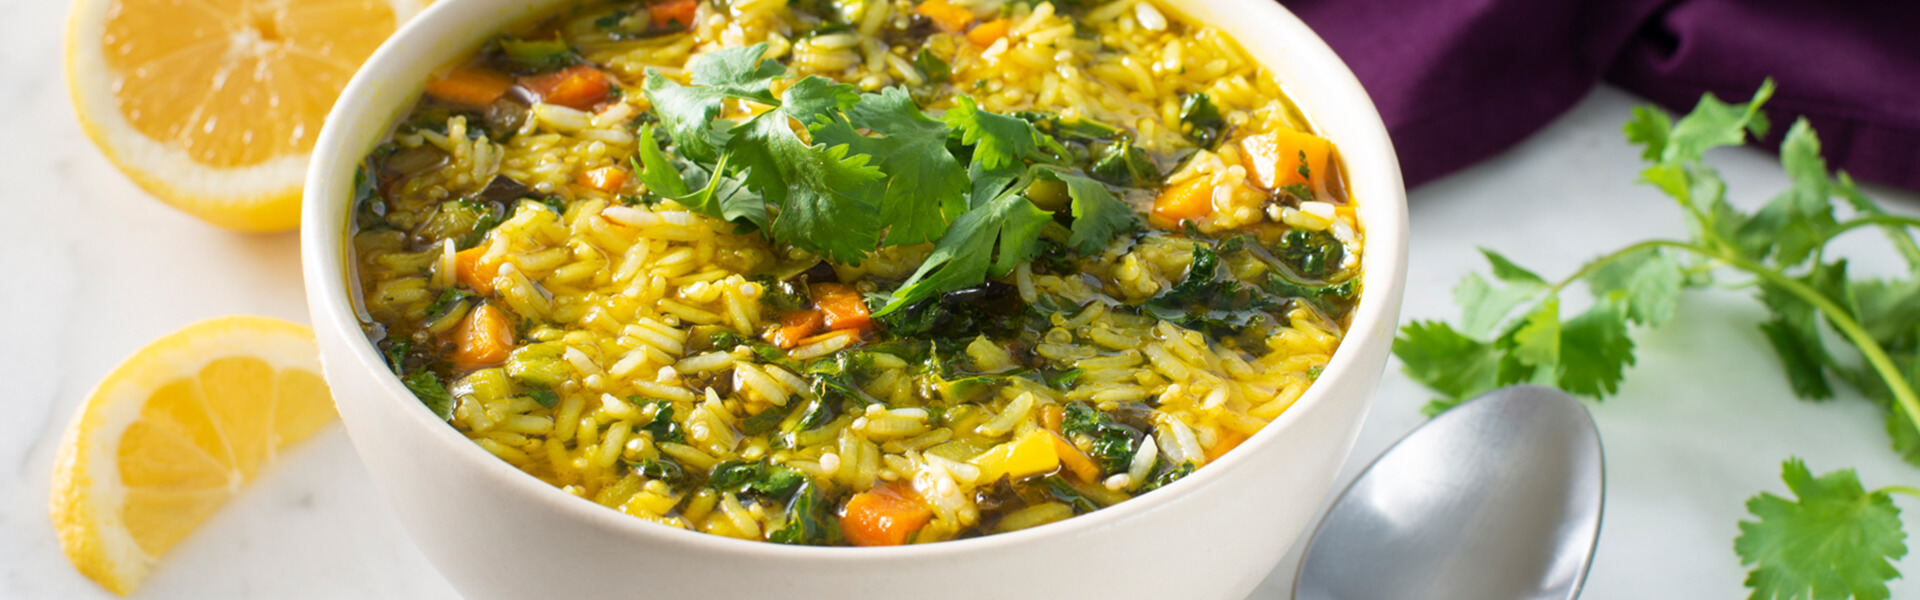 Sopa de vegetales al curry con arroz jazmín y quinoa